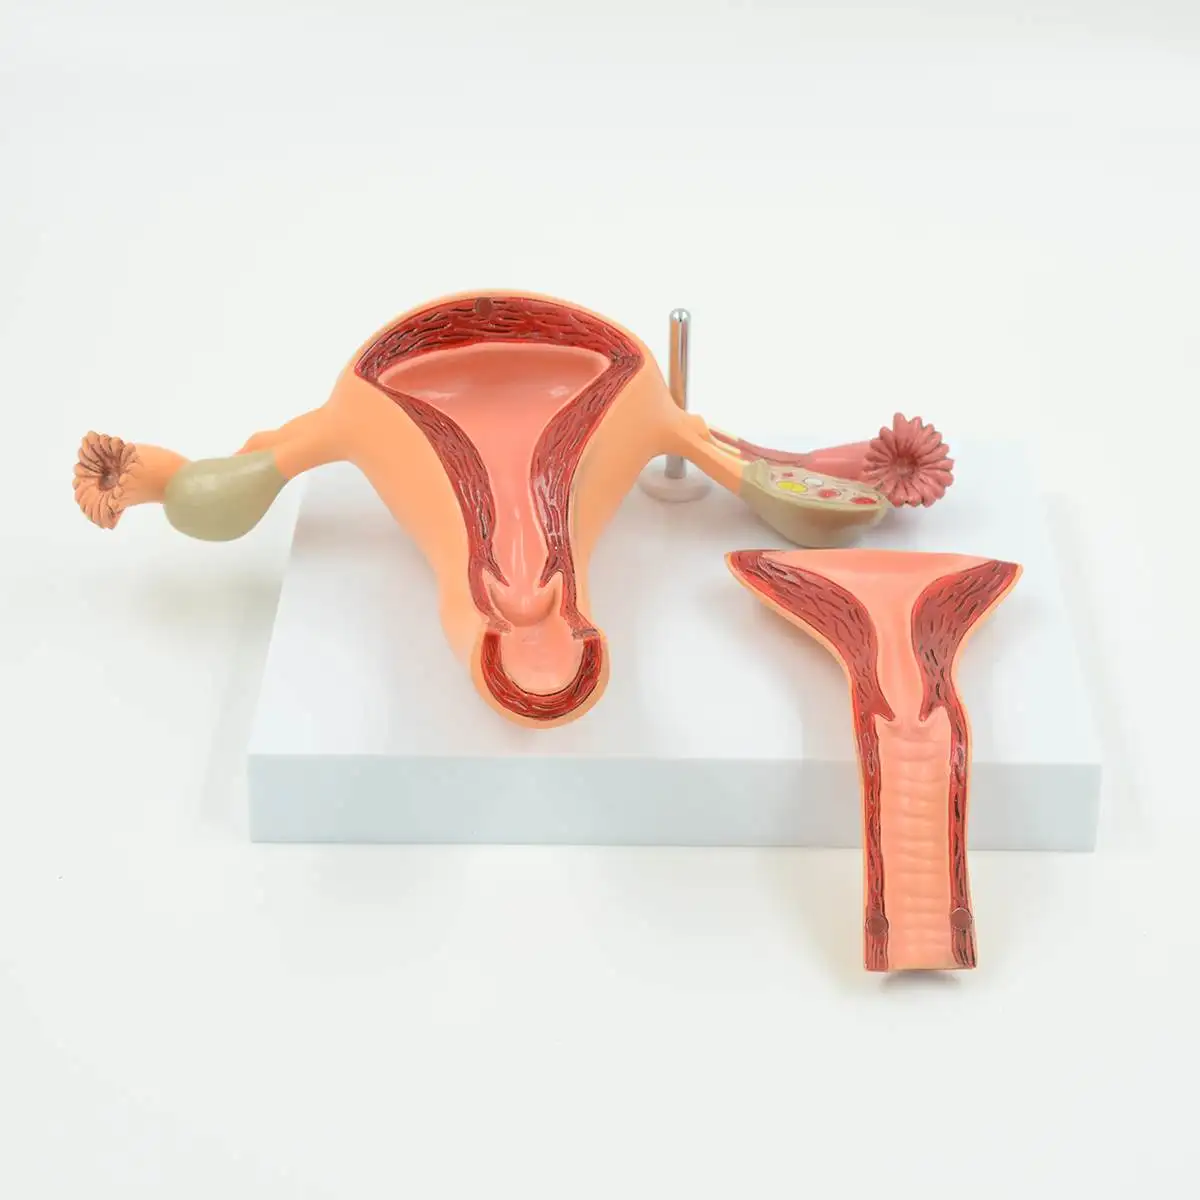 2 части анатомическая здоровая человеческая Женская матка модель яичников Женская медицинская наука матка Анатомия яичников модель образовательная поставка